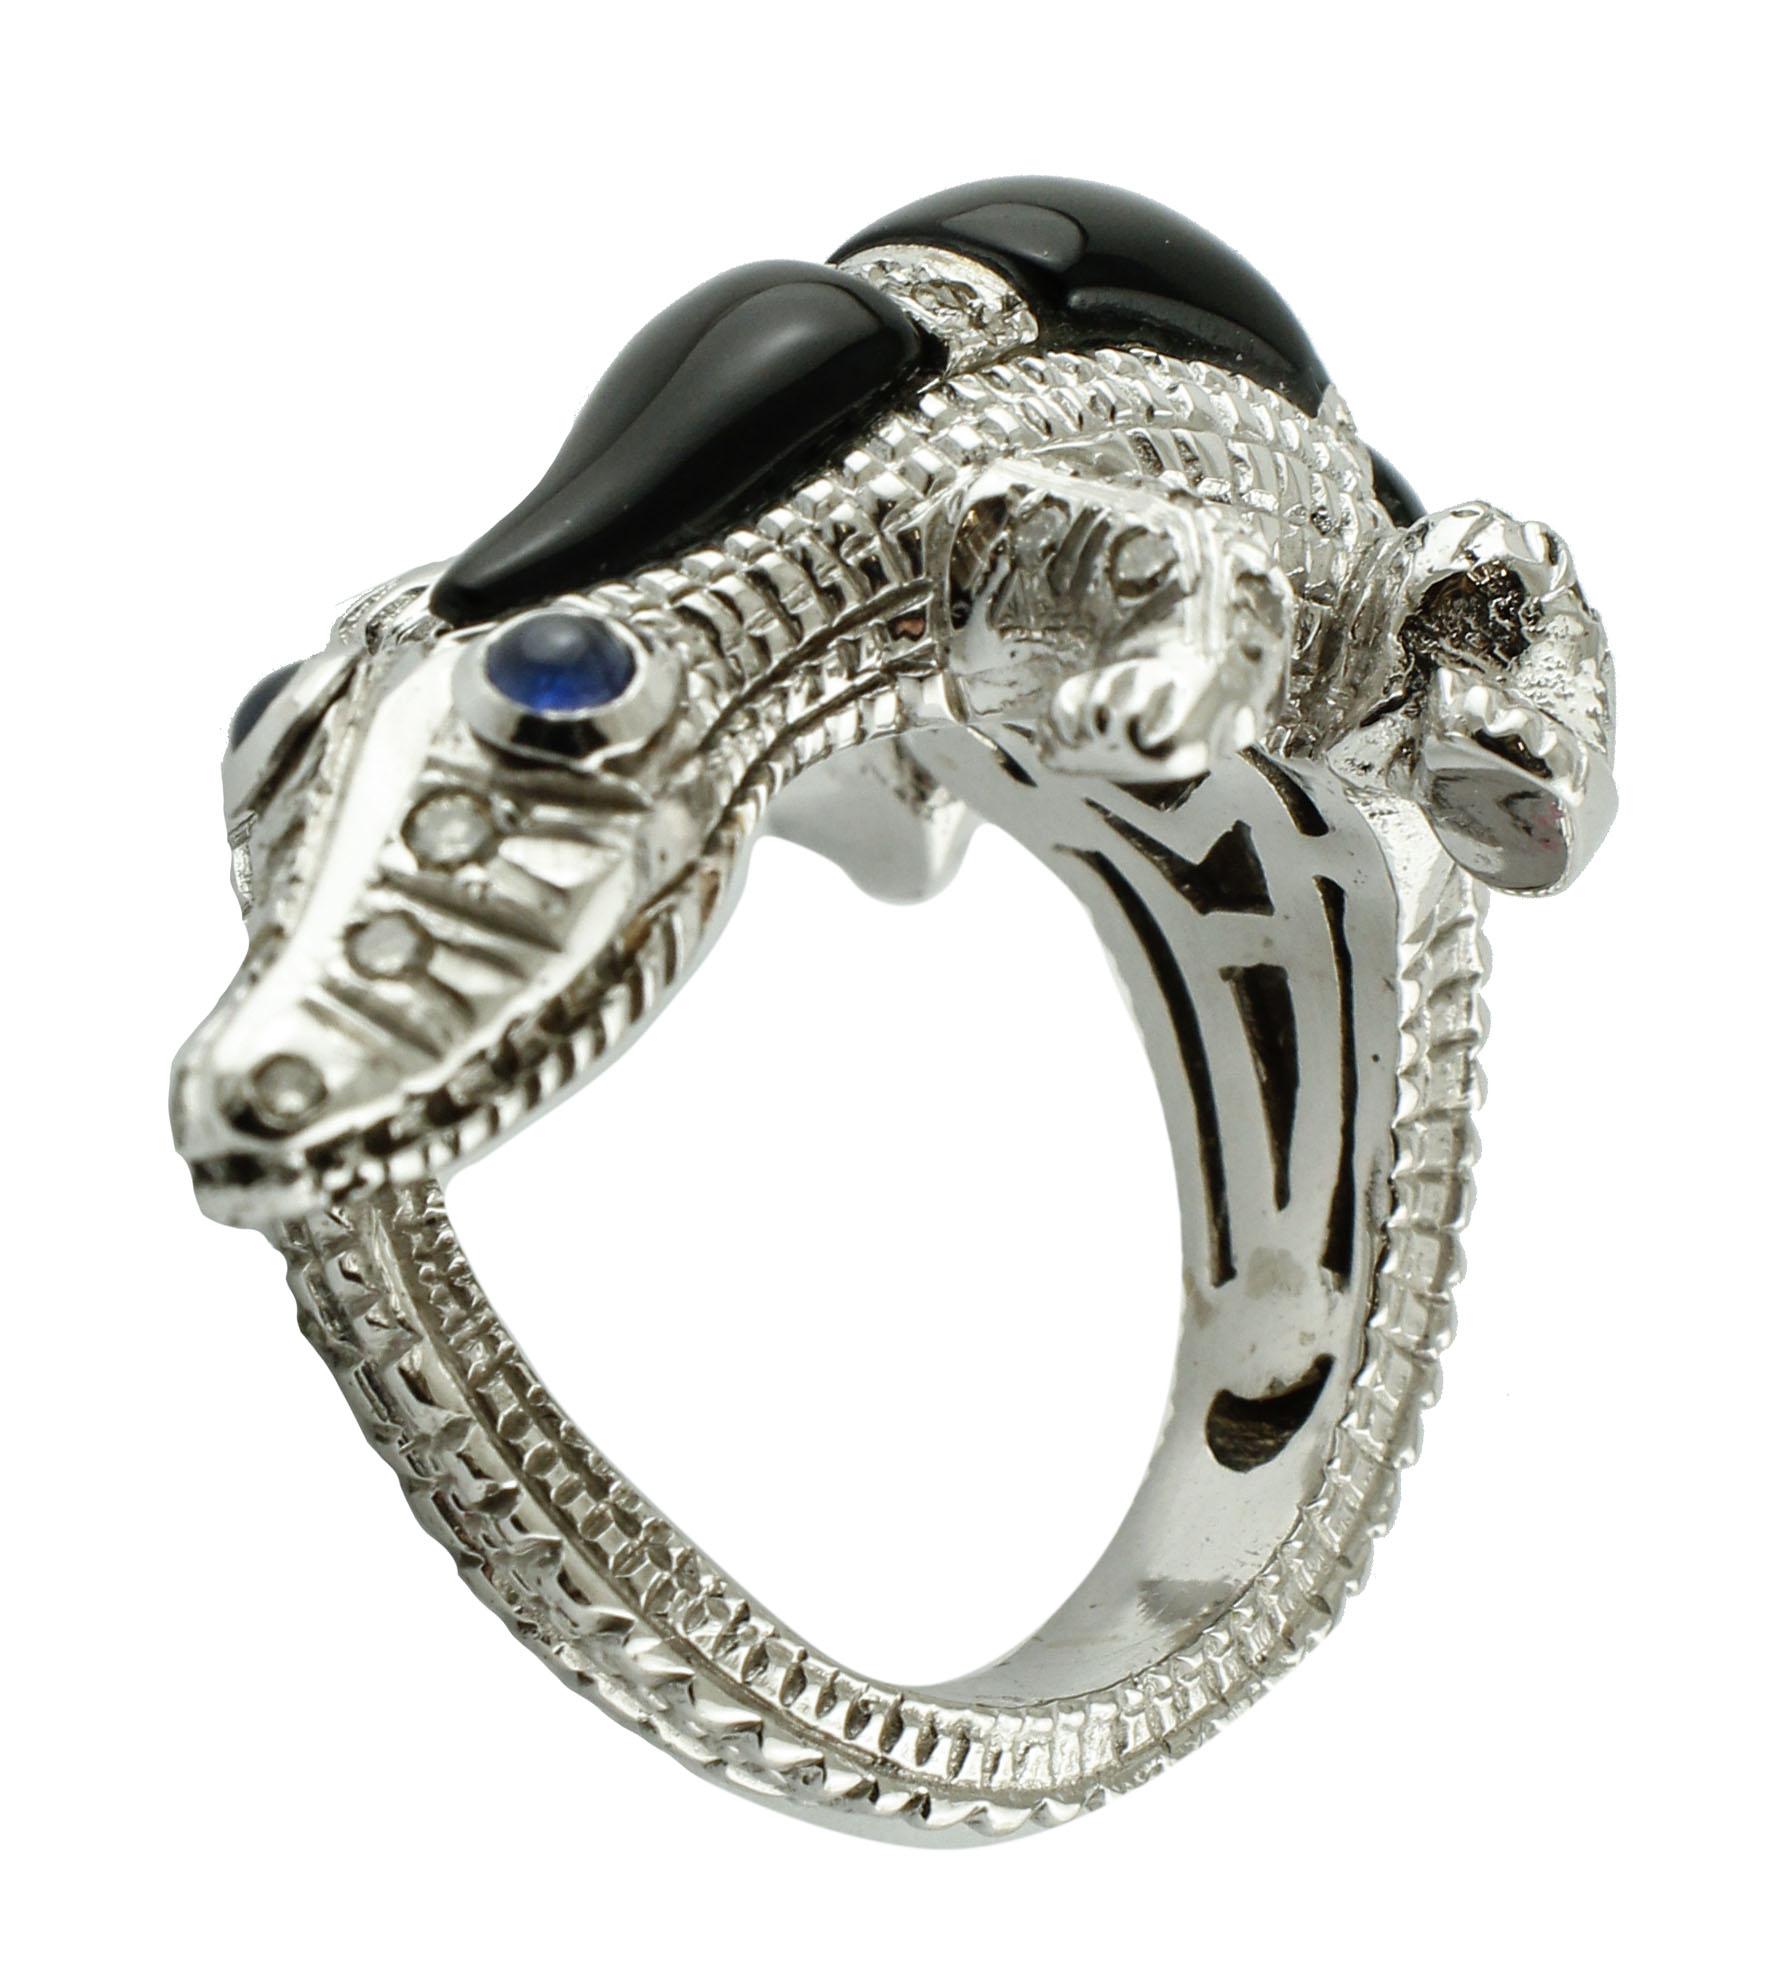 Diamanten, blaue Saphire, Onyx, Weißgold, Eidechse in Tierform Mode-Ring (Retro)